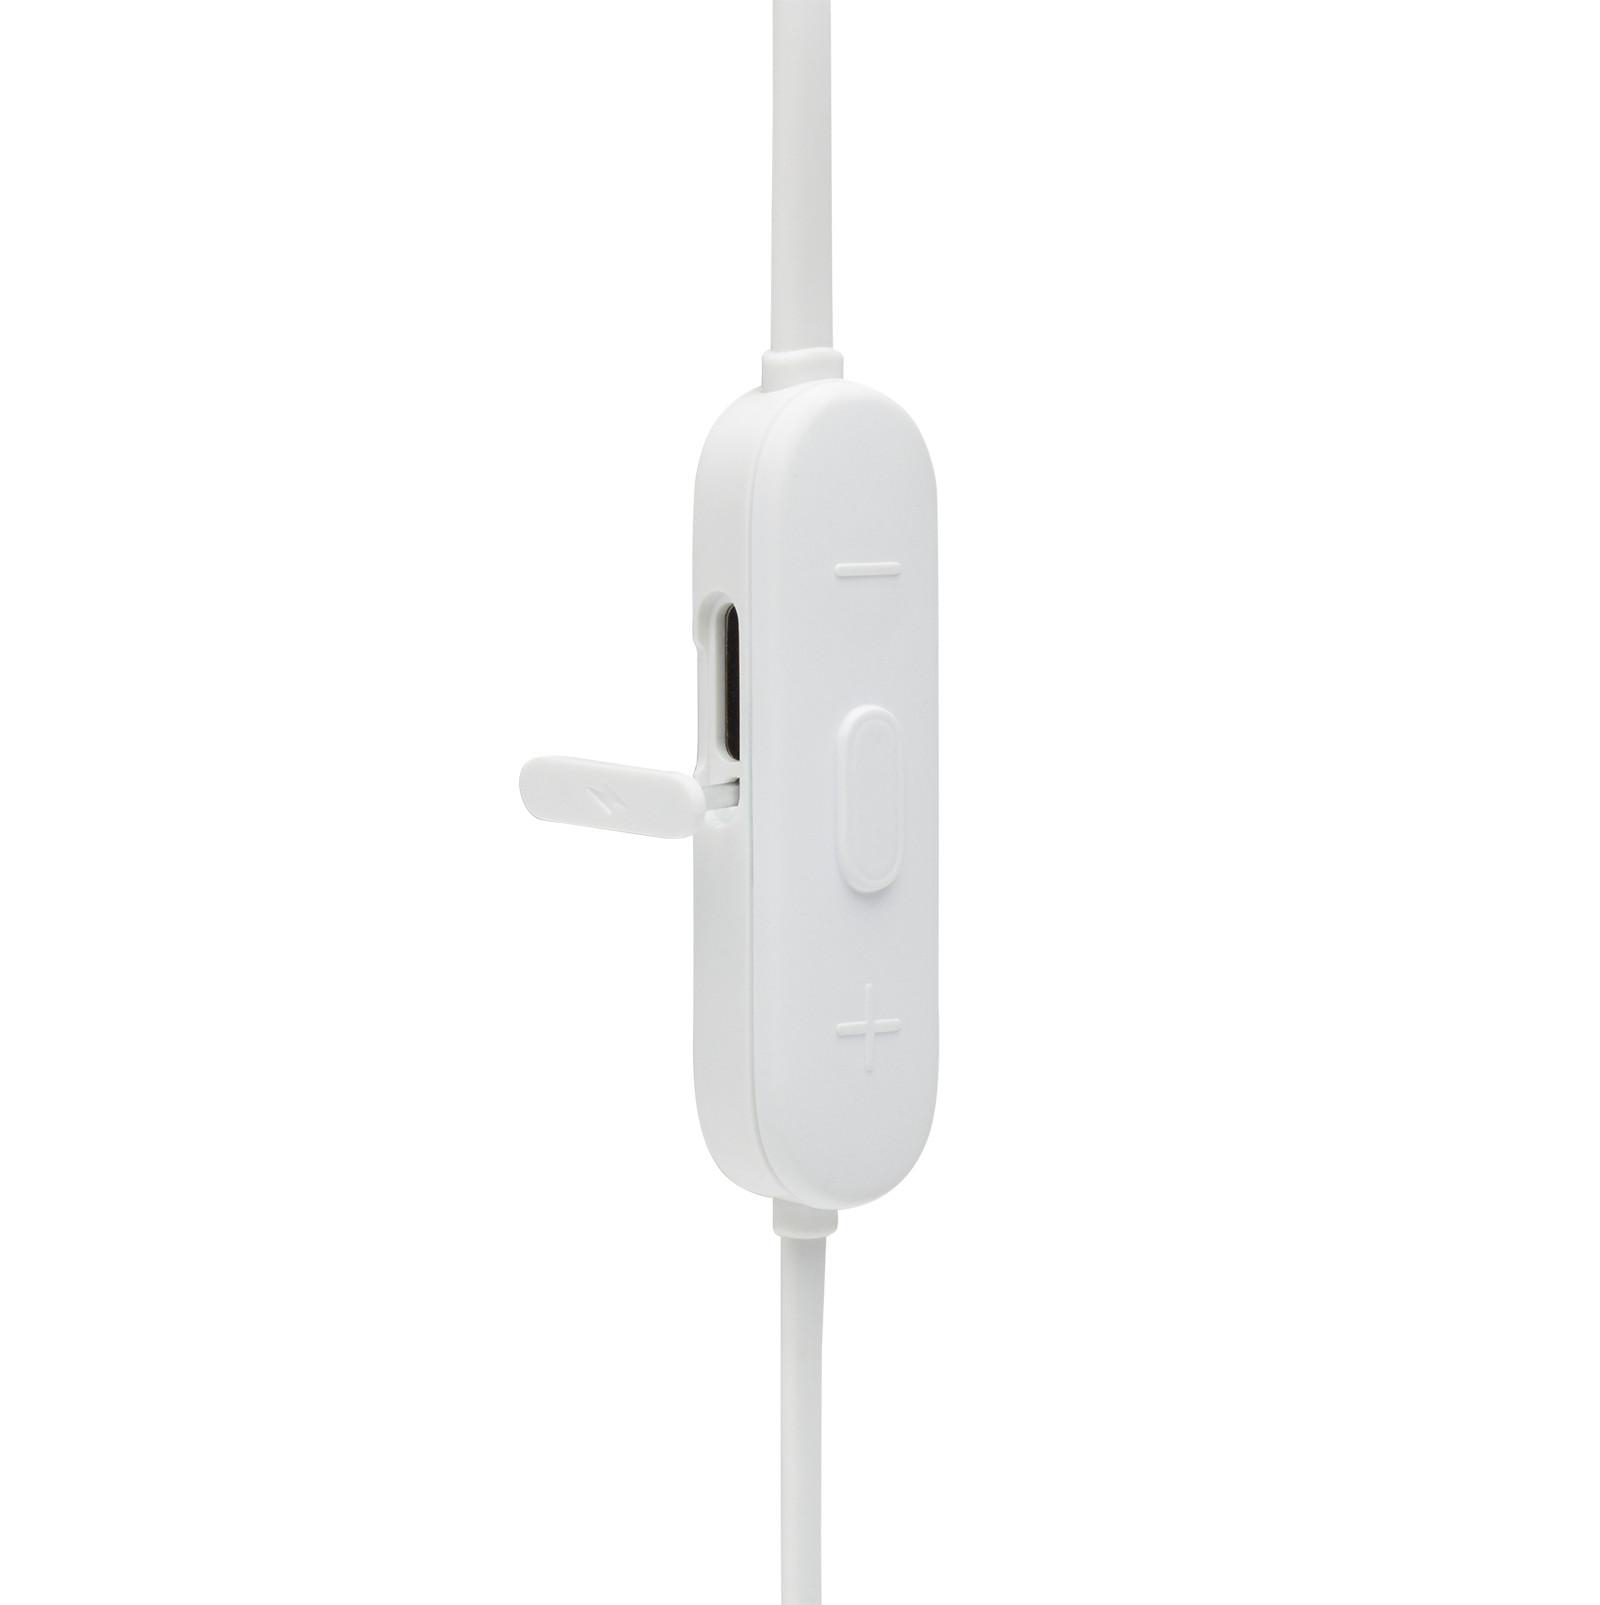 Tune Kopfhörer 175, White JBL In-ear Bluetooth